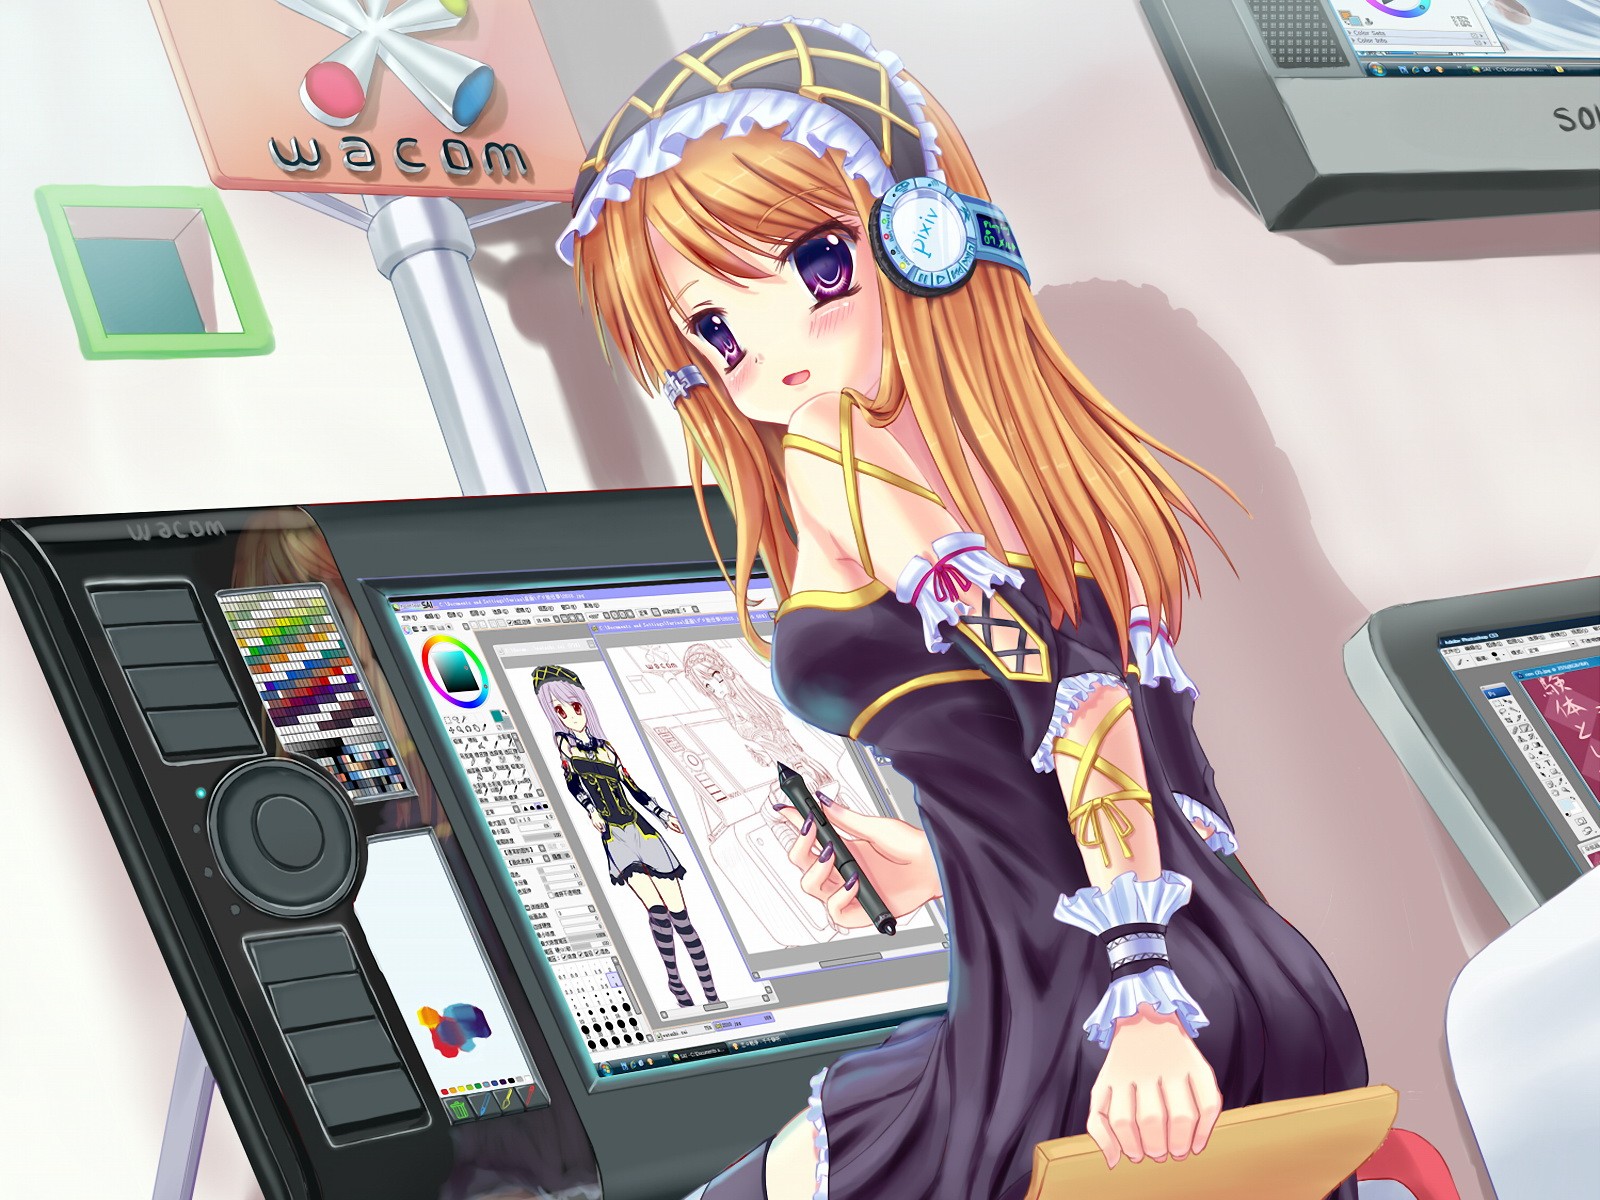 fond d'écran anime pour tablette,dessin animé,anime,la technologie,jeux,électronique